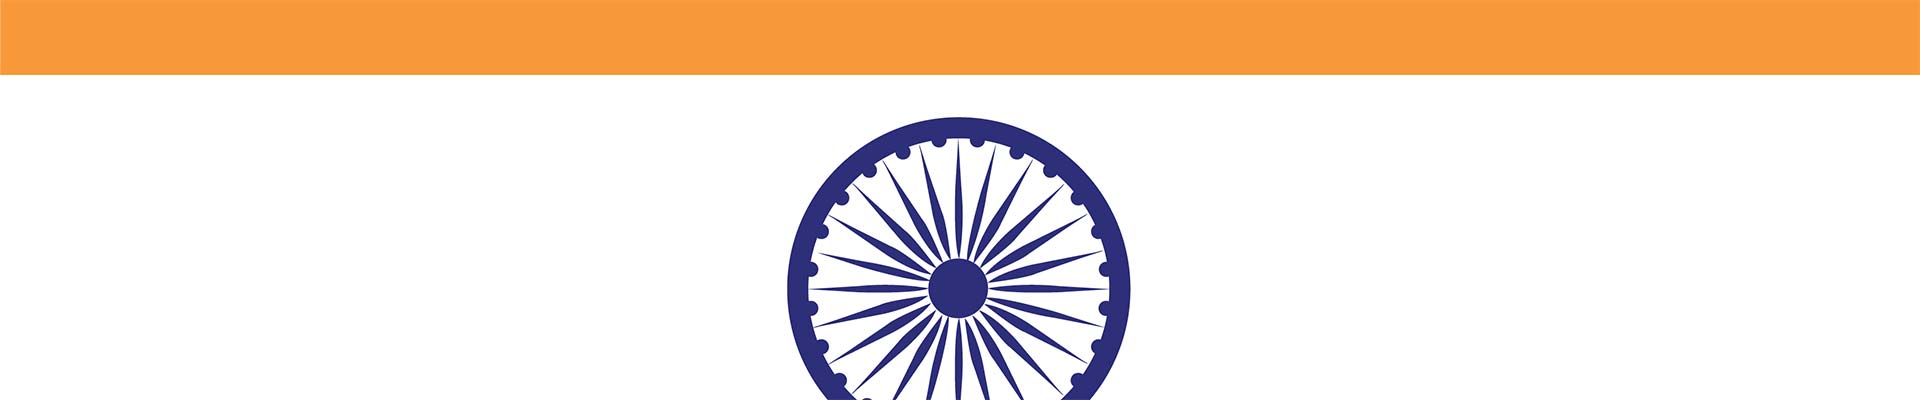 Hindistan bayrağının bir bölümü